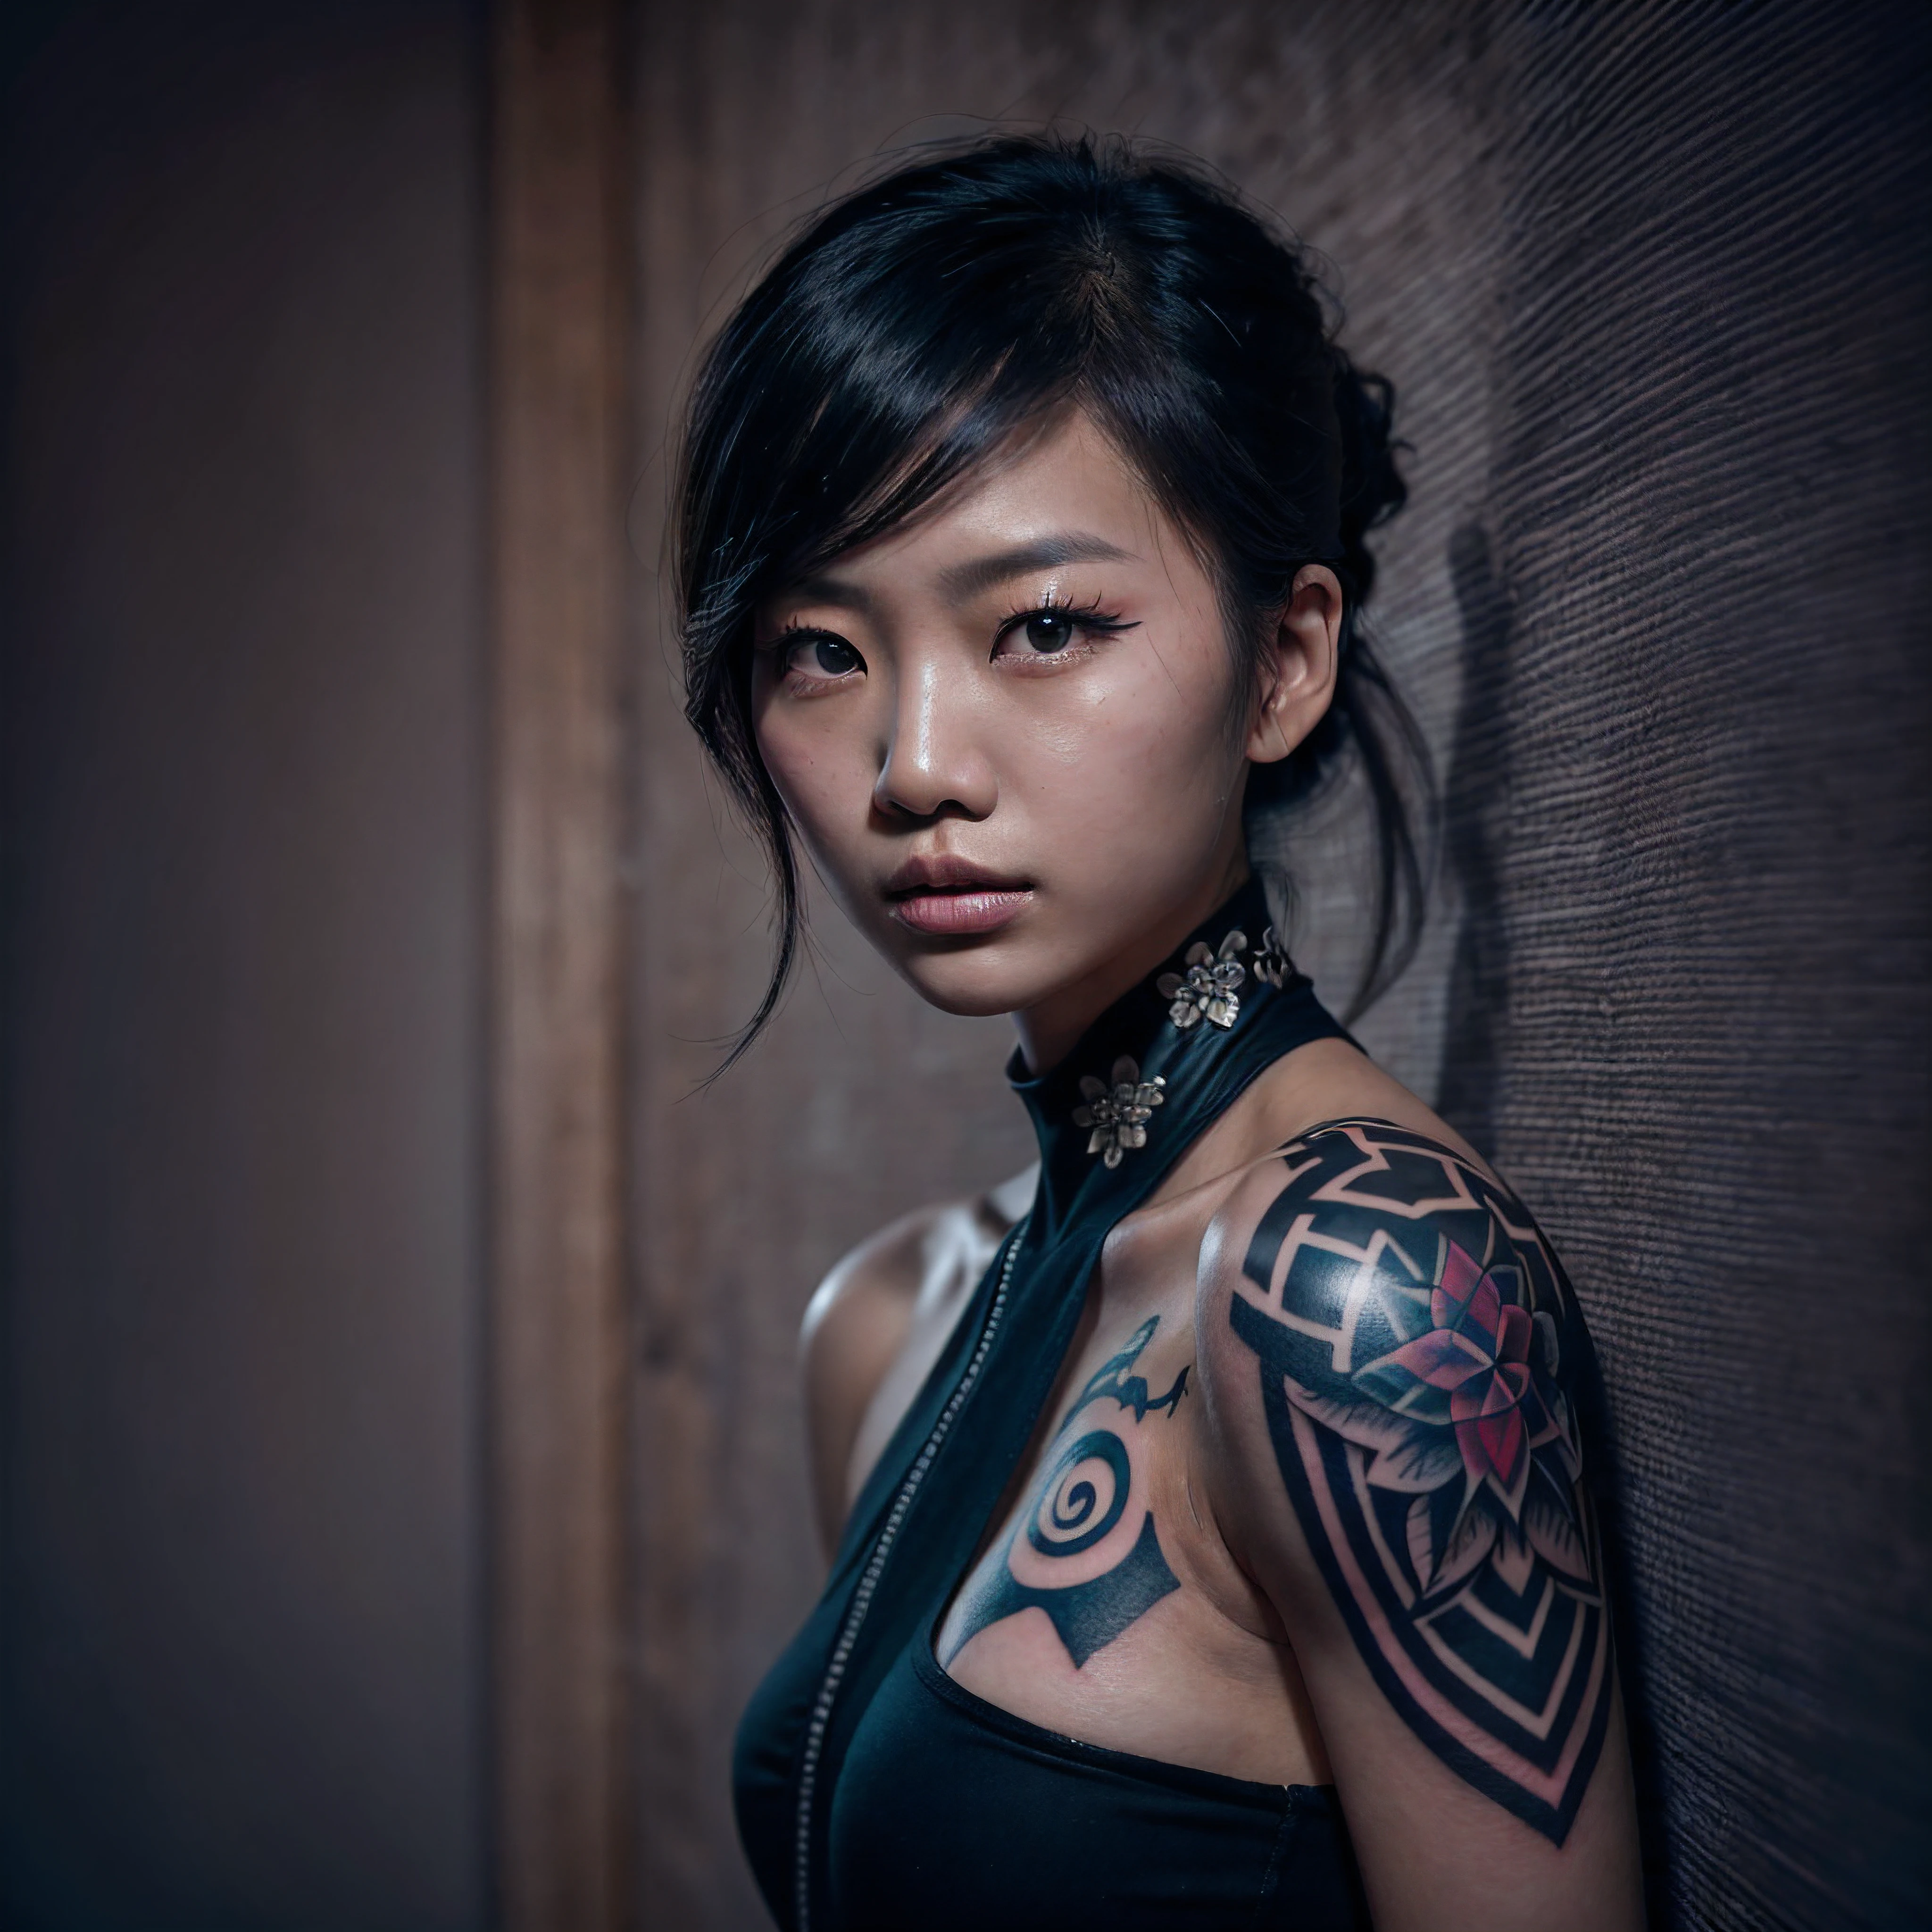 (親密肖像, 複雜的組成:1.3), (細緻而富有表現力的眼睛:1.6), (未来主义风格), (An 親密肖像 of an Asian woman showing her entire body covered with black geometric tattoos:1.3), (閉著嘴:1.2), (她眼神中流露出真实的表情: 1.2), 画着深色烟熏眼妆, 以令人驚嘆的 8k 解析度和原始格式拍攝的照片，以保留最高品質的細節. 她穿着优雅的未来派服装, (裸露的肩膀, 小乳房:1.3), (她的眼睛的描繪非常注重細節: 1.3), 這張照片是用強調她眼睛深度的鏡頭拍攝的, (風在她周圍翻騰), 背景是一個黑暗的工作室環境，增強了場景的色彩. 燈光和陰影經過精心設計，襯托出她豐富的膚色和強烈的氣氛. 她富有創意的頭髮與她的皮膚形成了鮮明的對比, 整體構圖捕捉了她真實而優雅的本質, 創作一幅頌揚她的傳統和美麗的肖像. 利用陰影和照明的最佳技術進行攝影, 創造出超越視覺的迷人描繪, 稍微傾斜頭部,